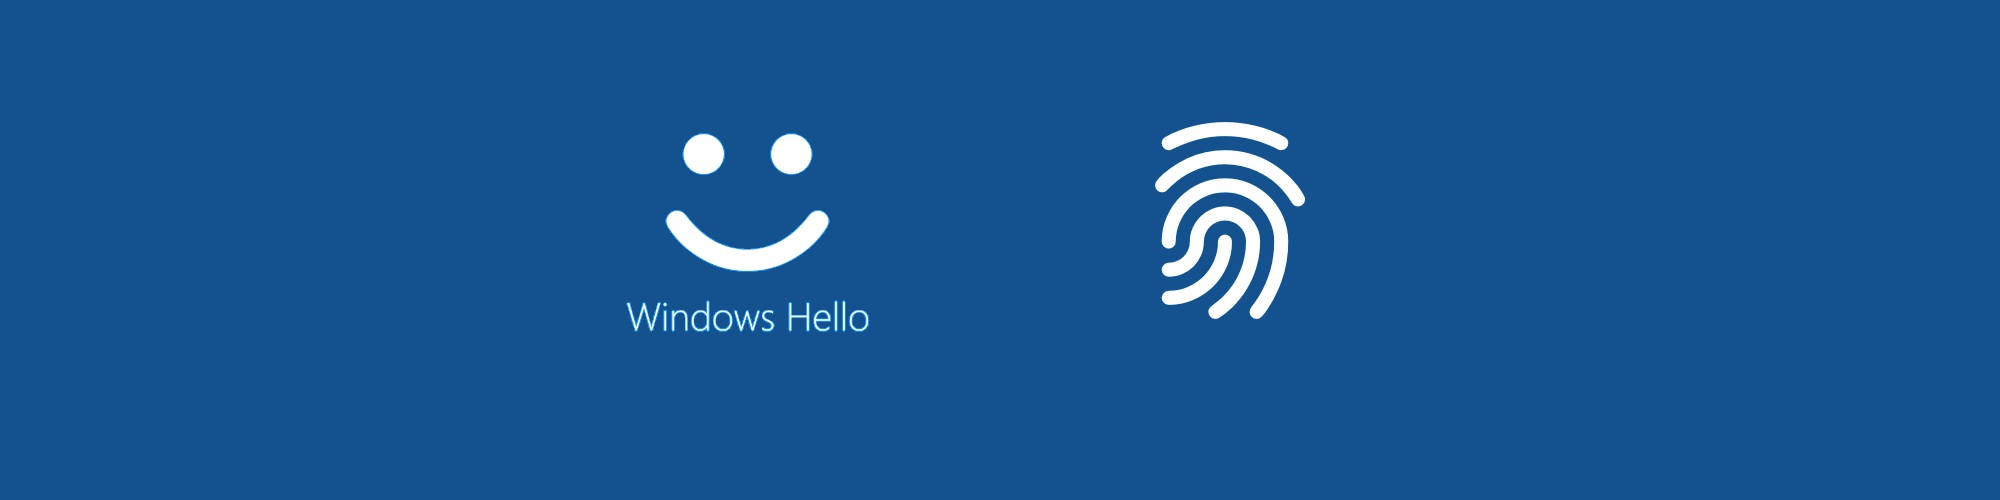 Windows Hello 指紋認証